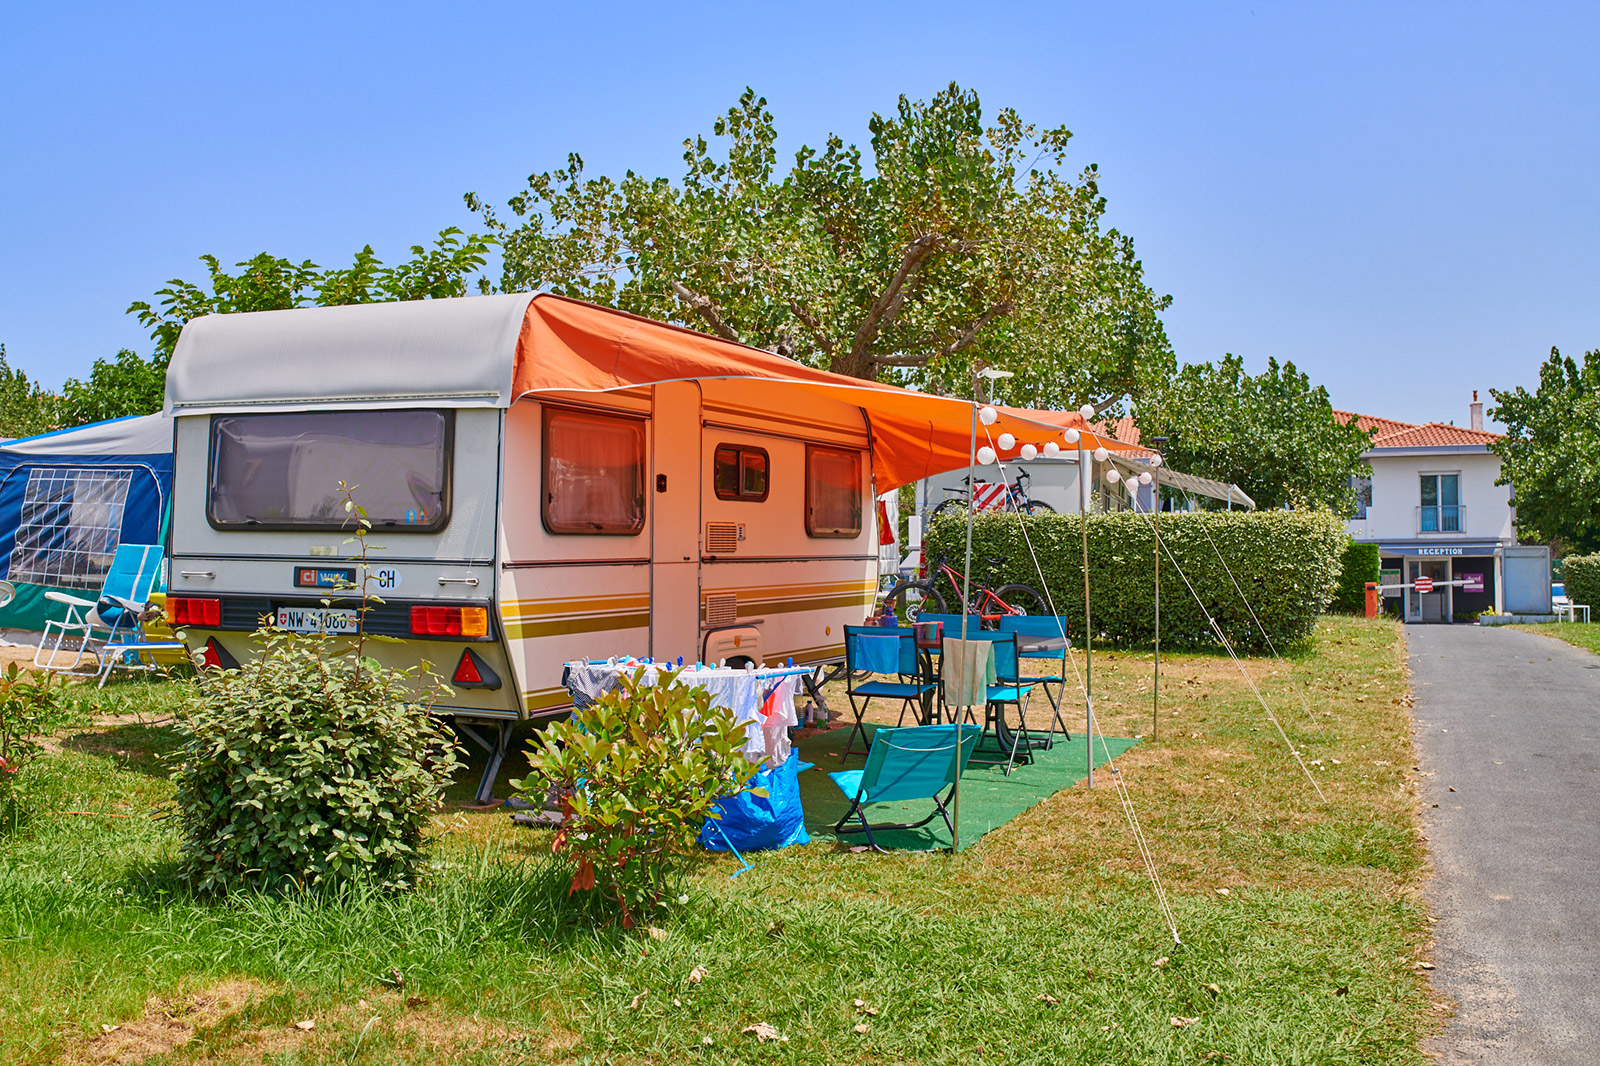 Biarritz Campsite